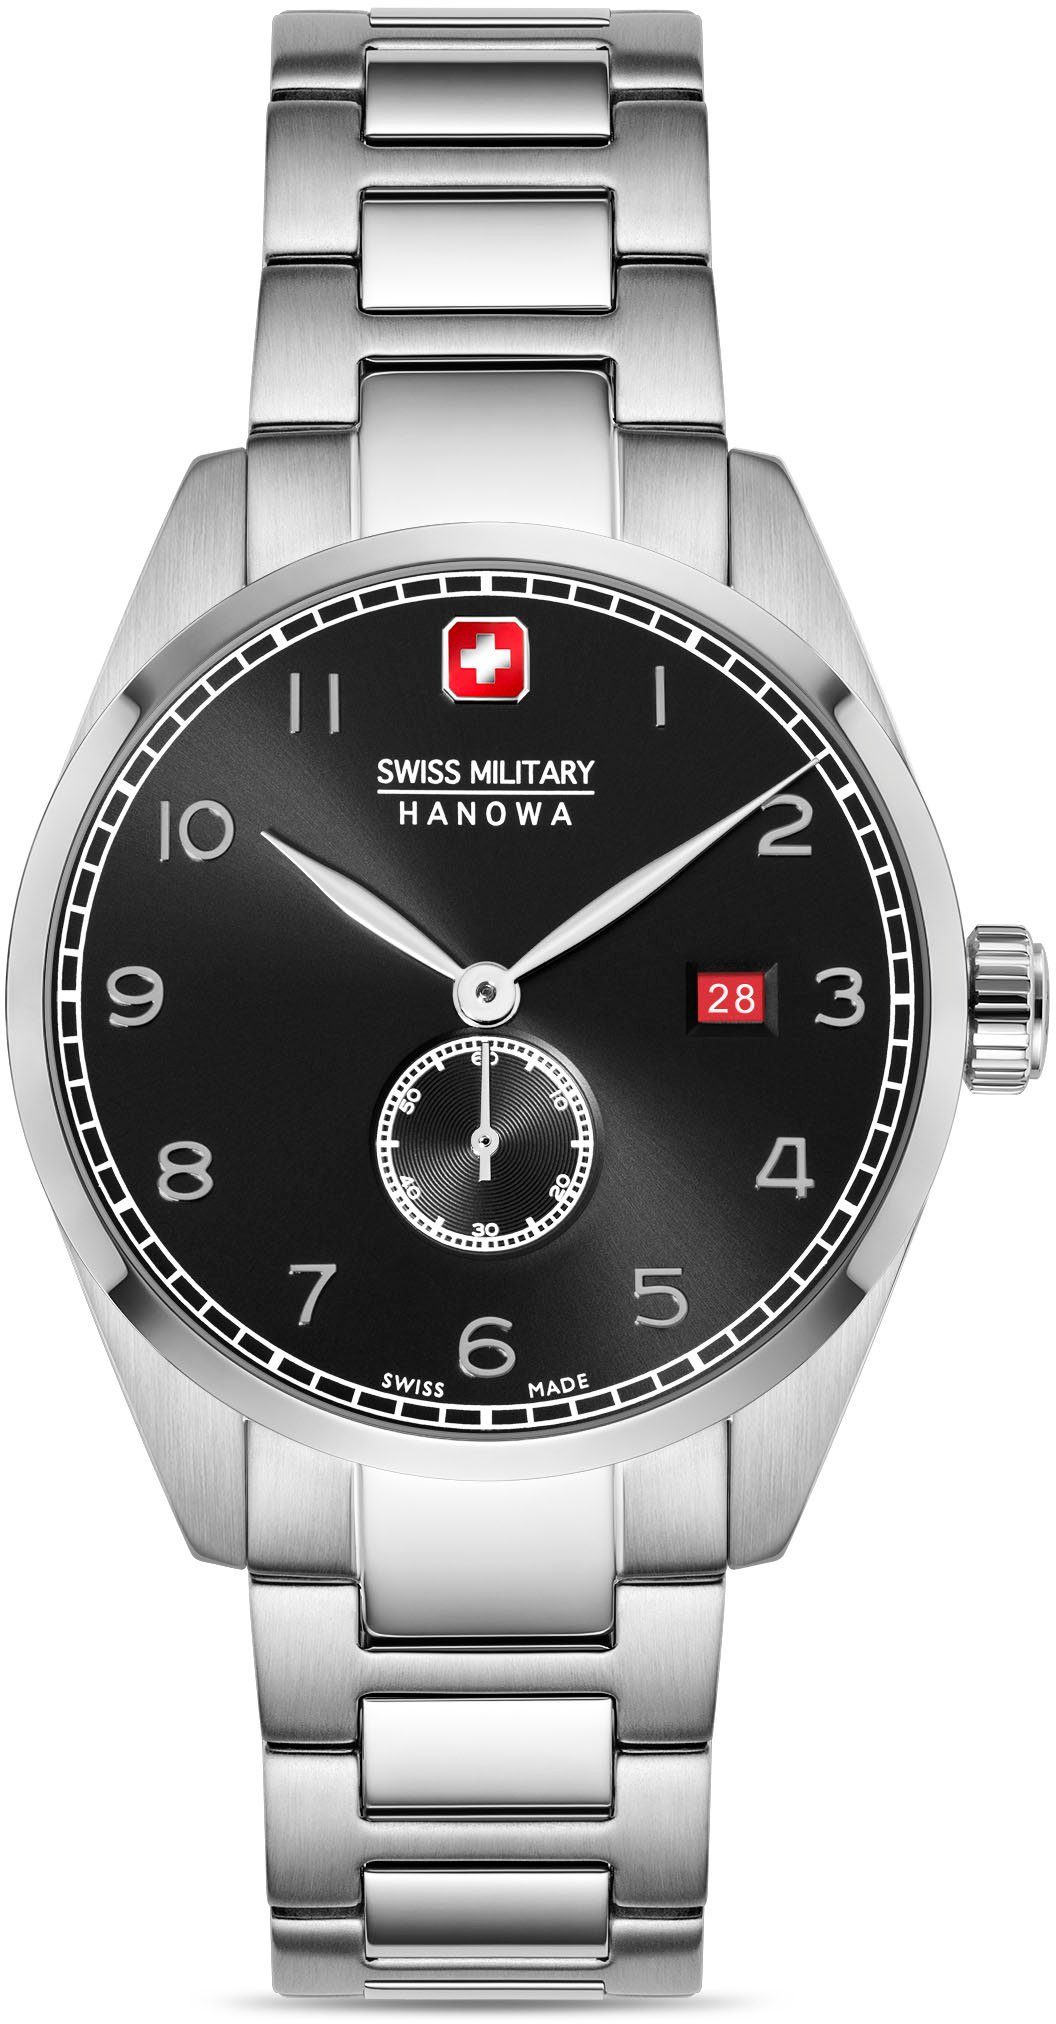 SMWGH0000704 LYNX, Military Swiss Hanowa Uhr Schweizer